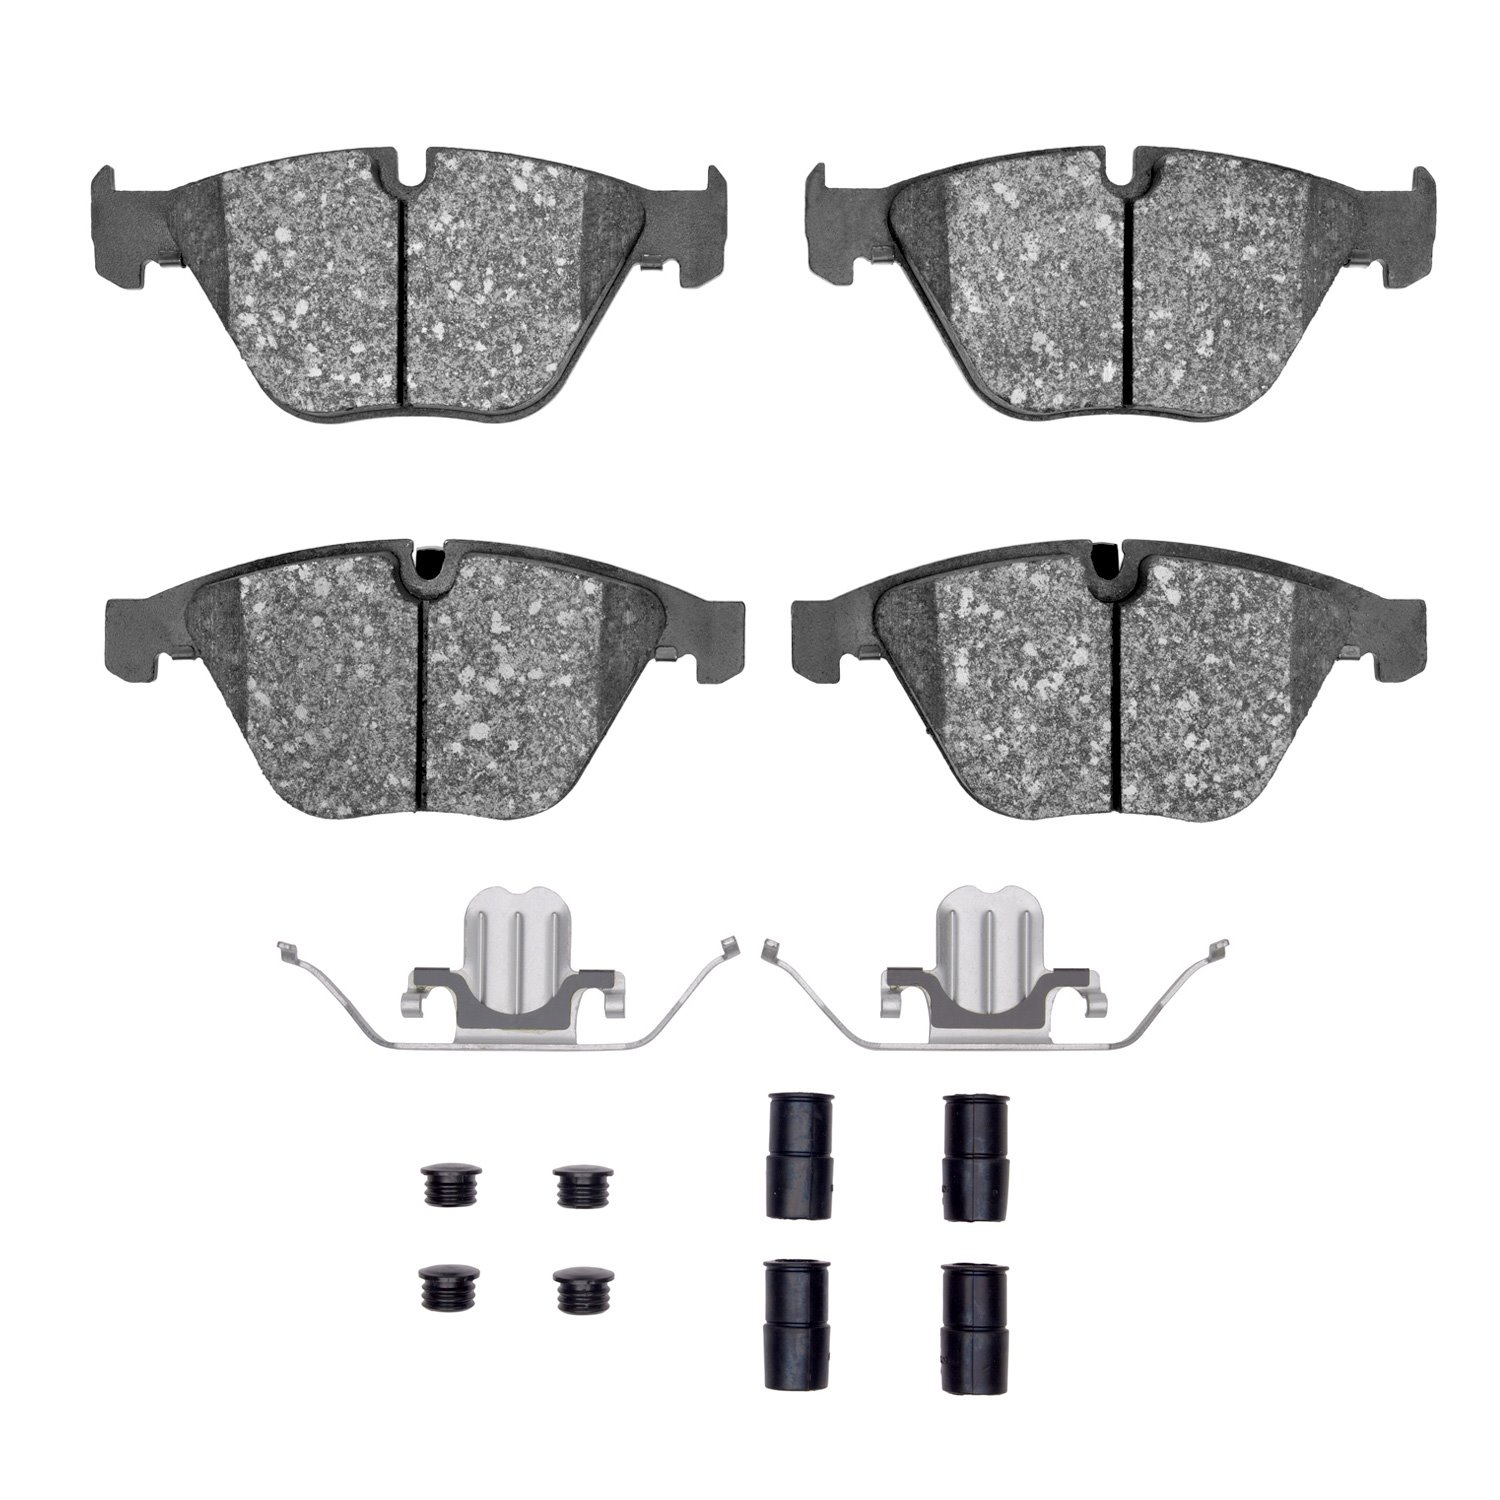 Semi-Metallic Brake Pads & Hardware Kit, 2007-2015 BMW, Position: Front